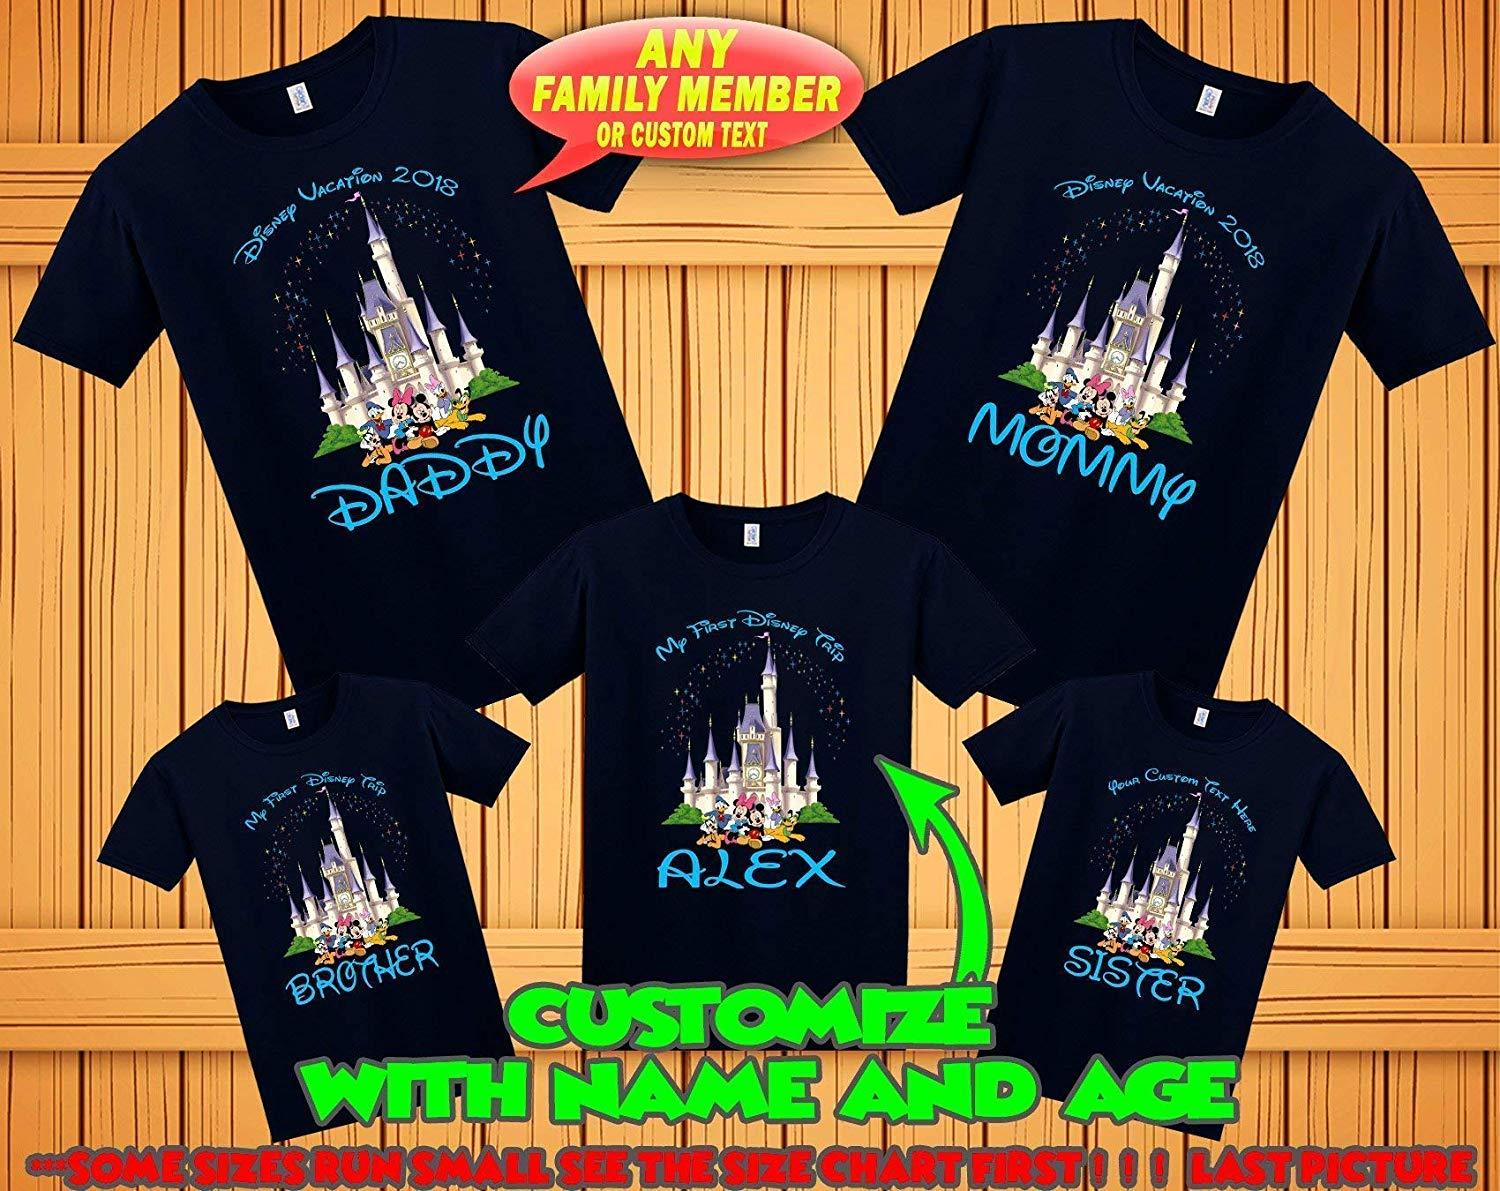 Disney Family 2018 Logo - Amazon.com: Disney family matching custom t-shirts, Family vacation ...